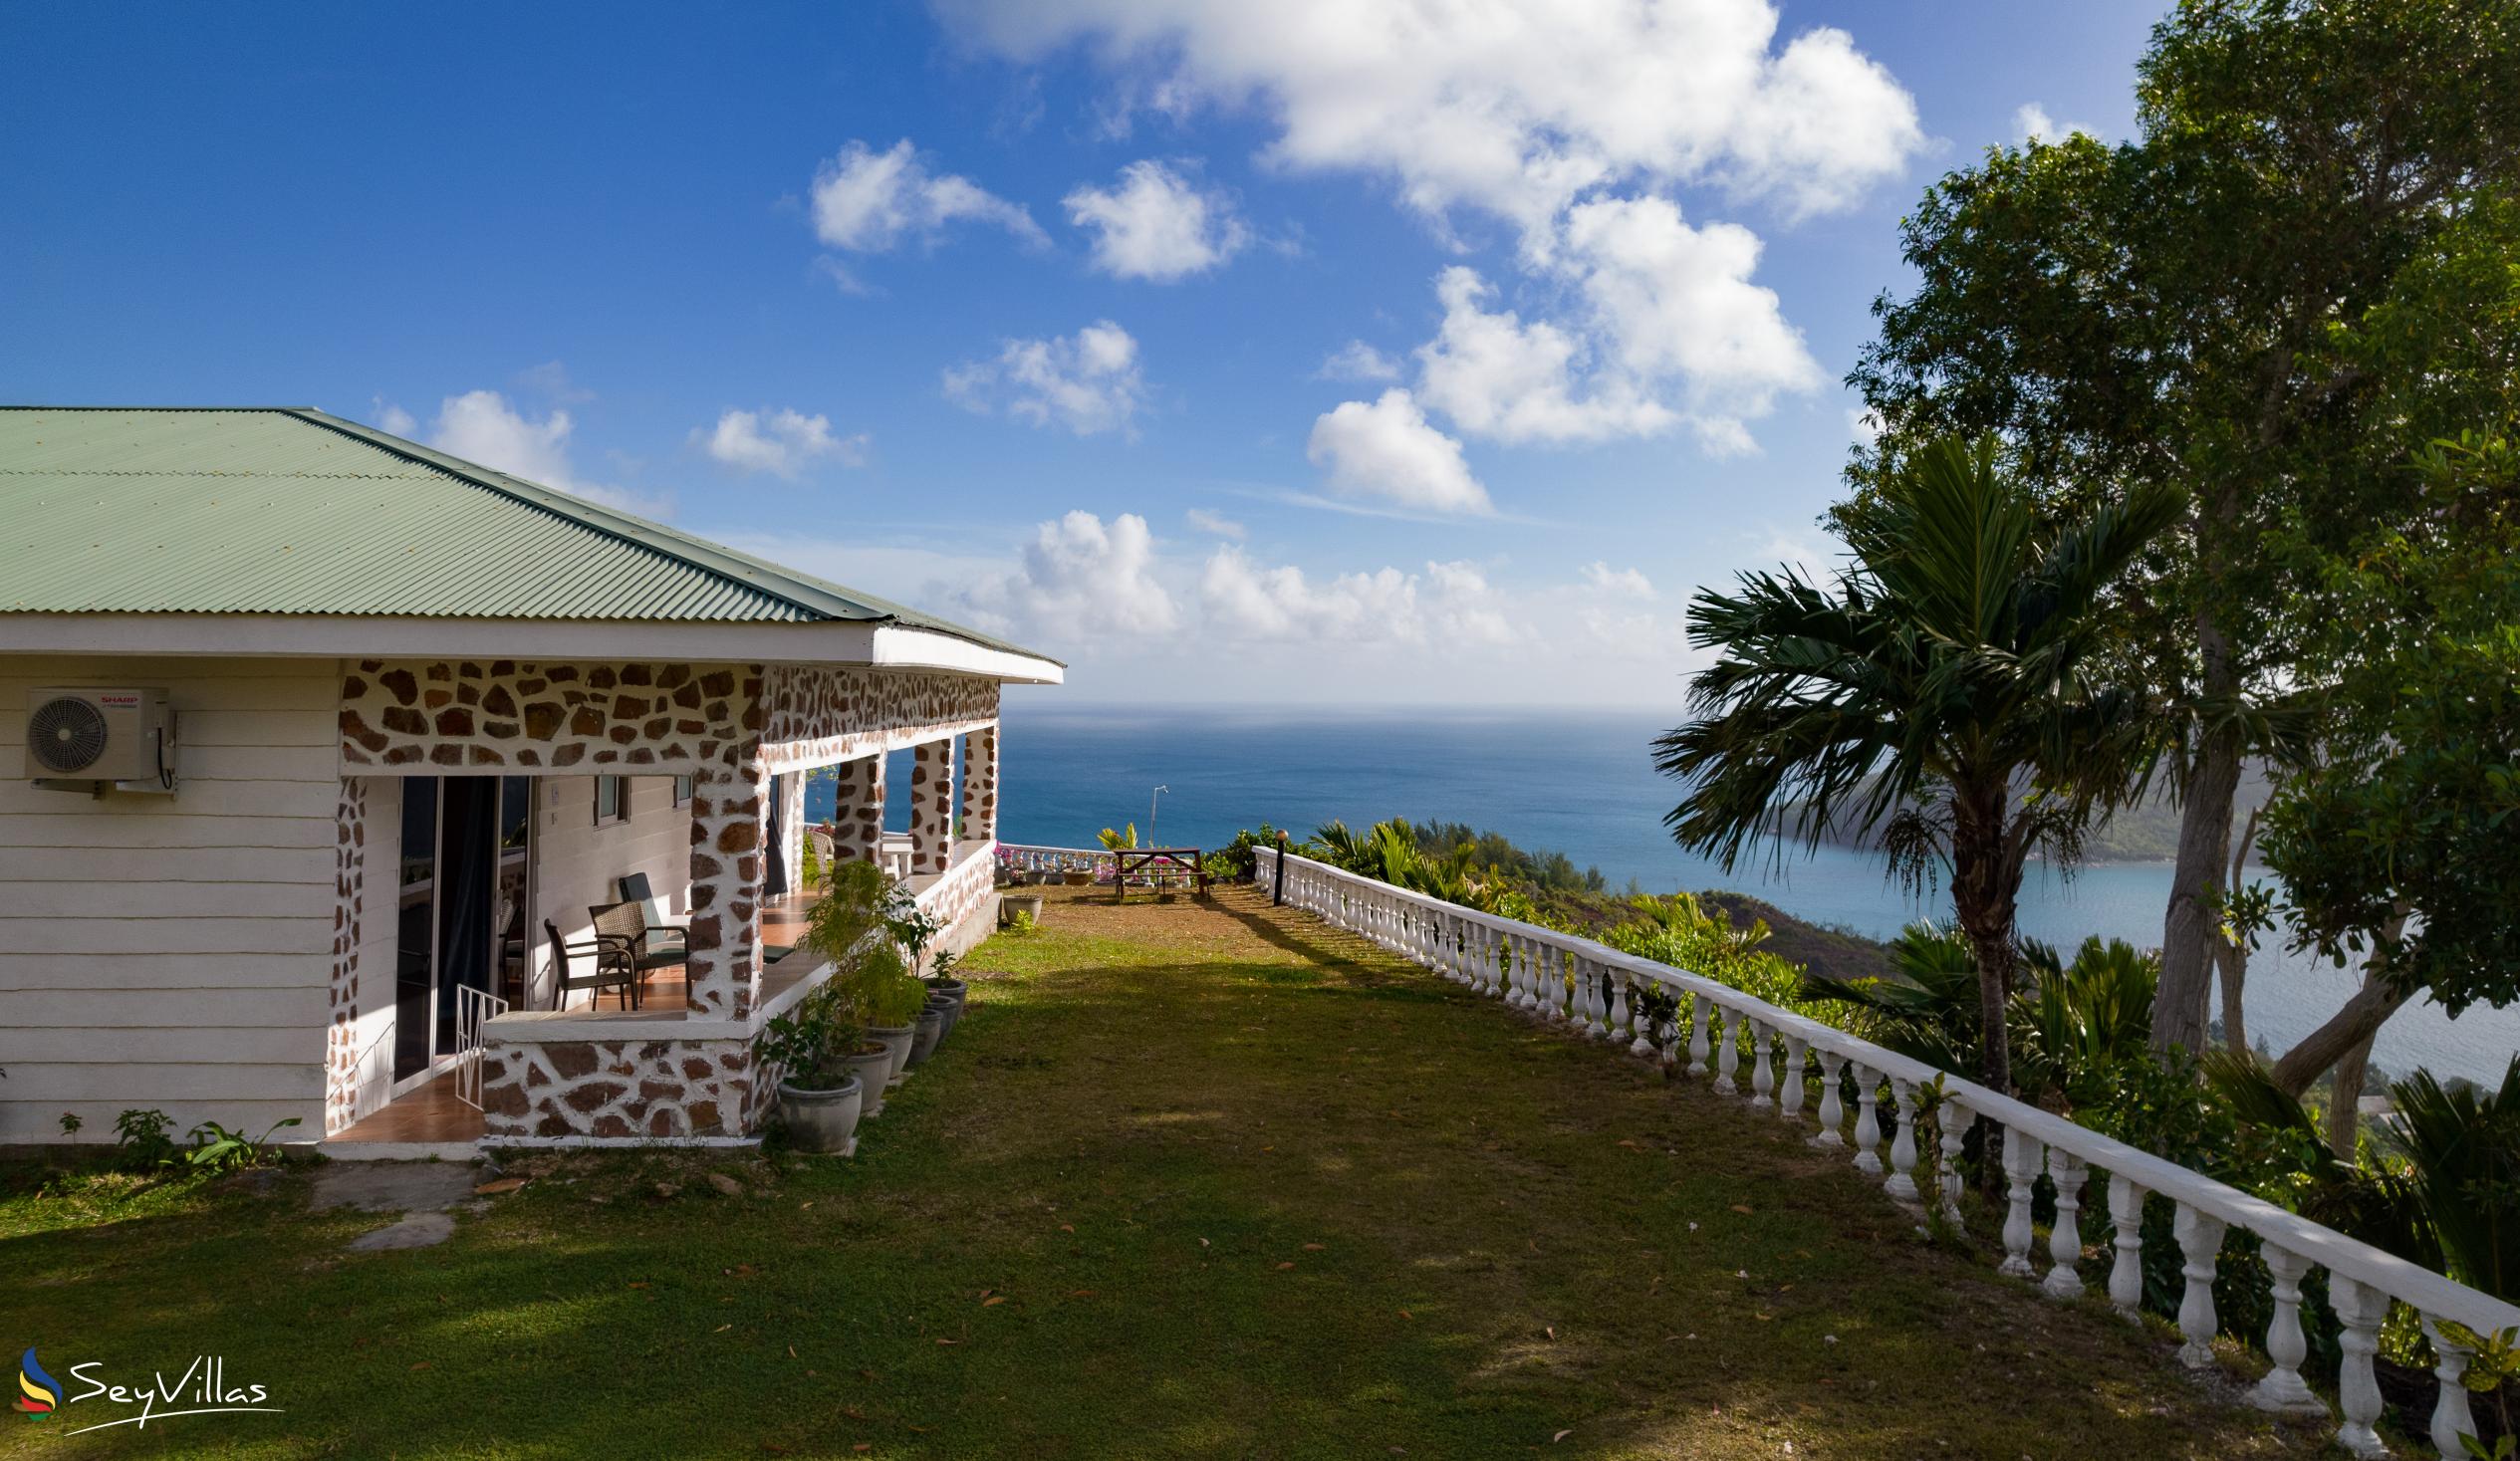 Foto 16: Maison du Soleil - Aussenbereich - Praslin (Seychellen)